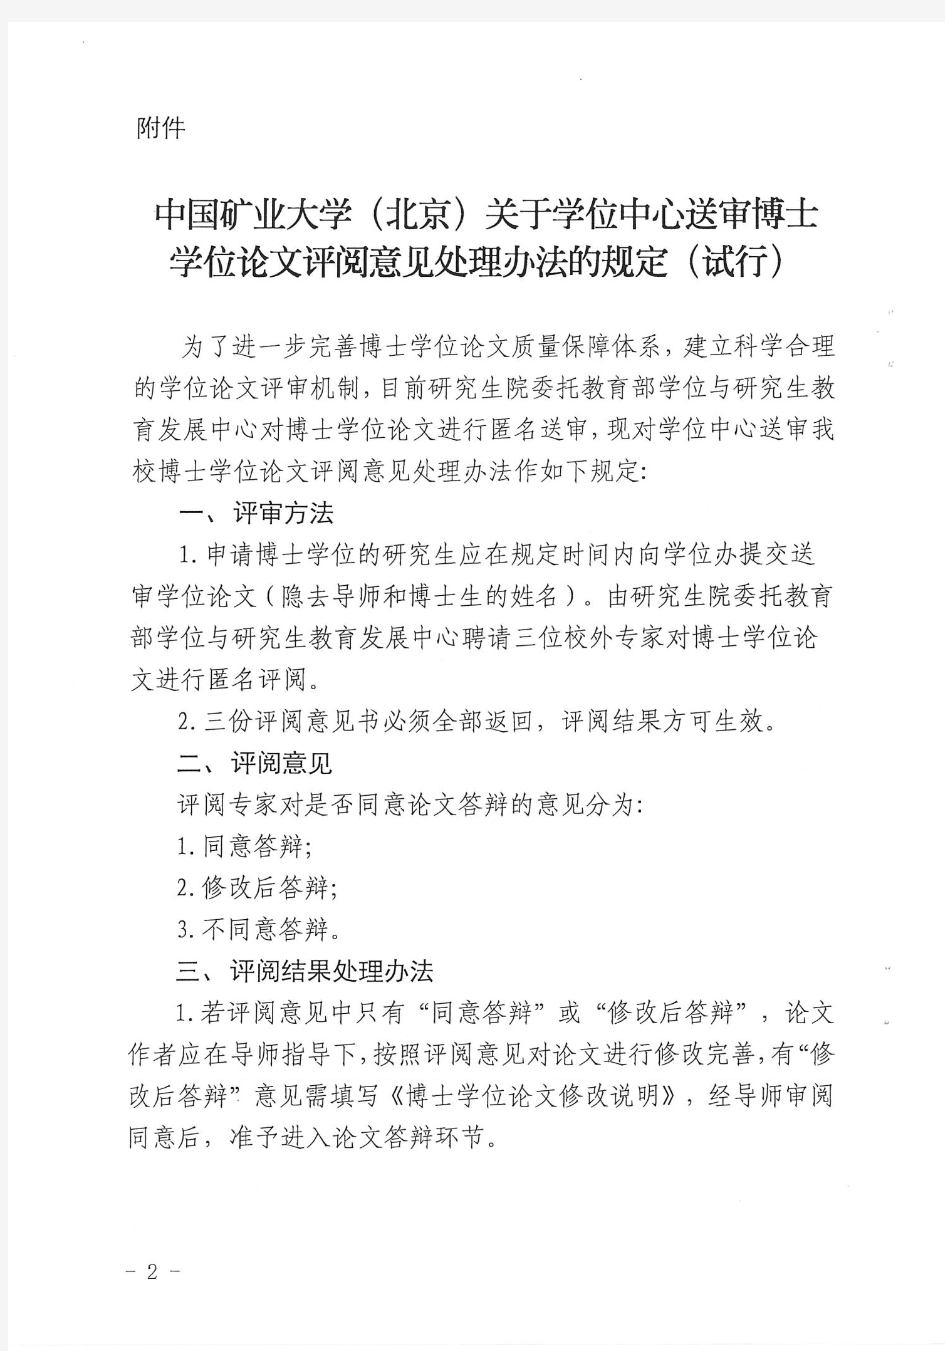 中国矿业大学(北京)硕博士毕业条件(2016版)